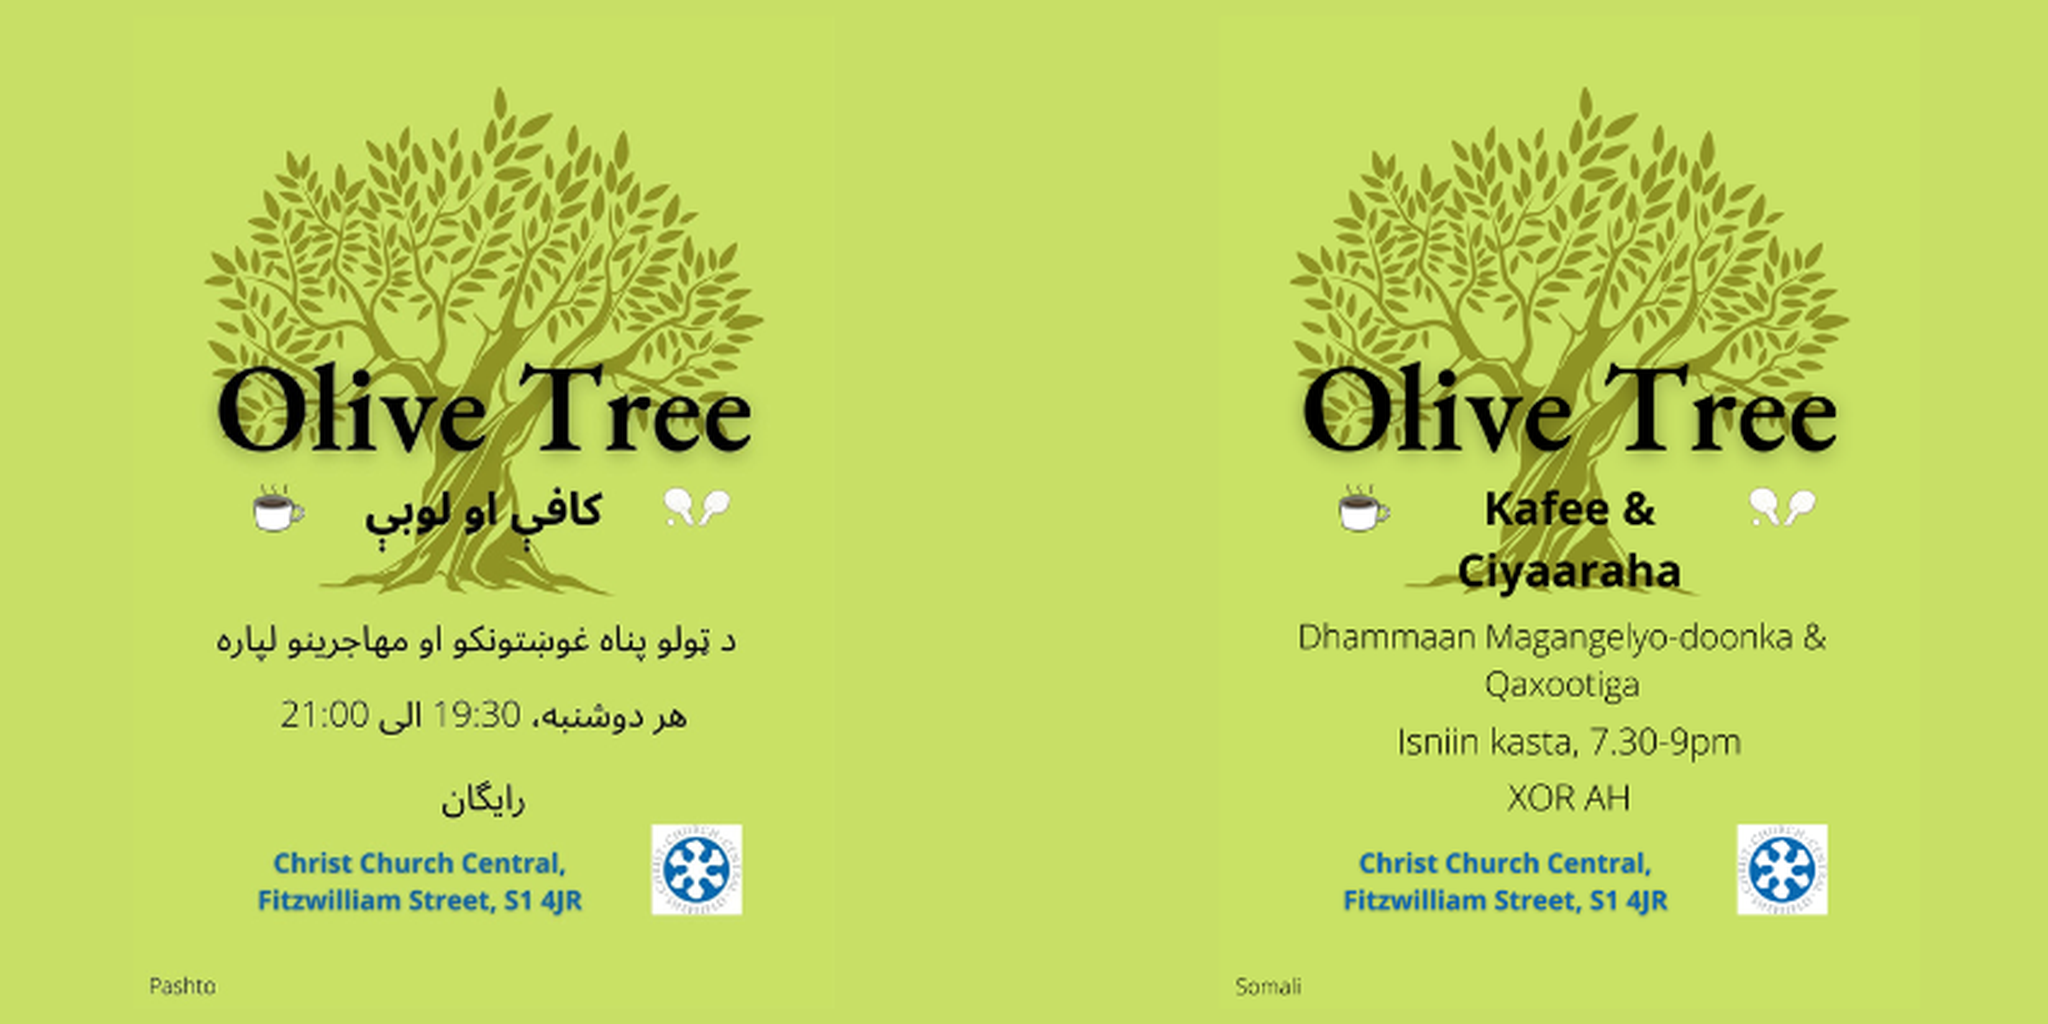 Olive tree 4